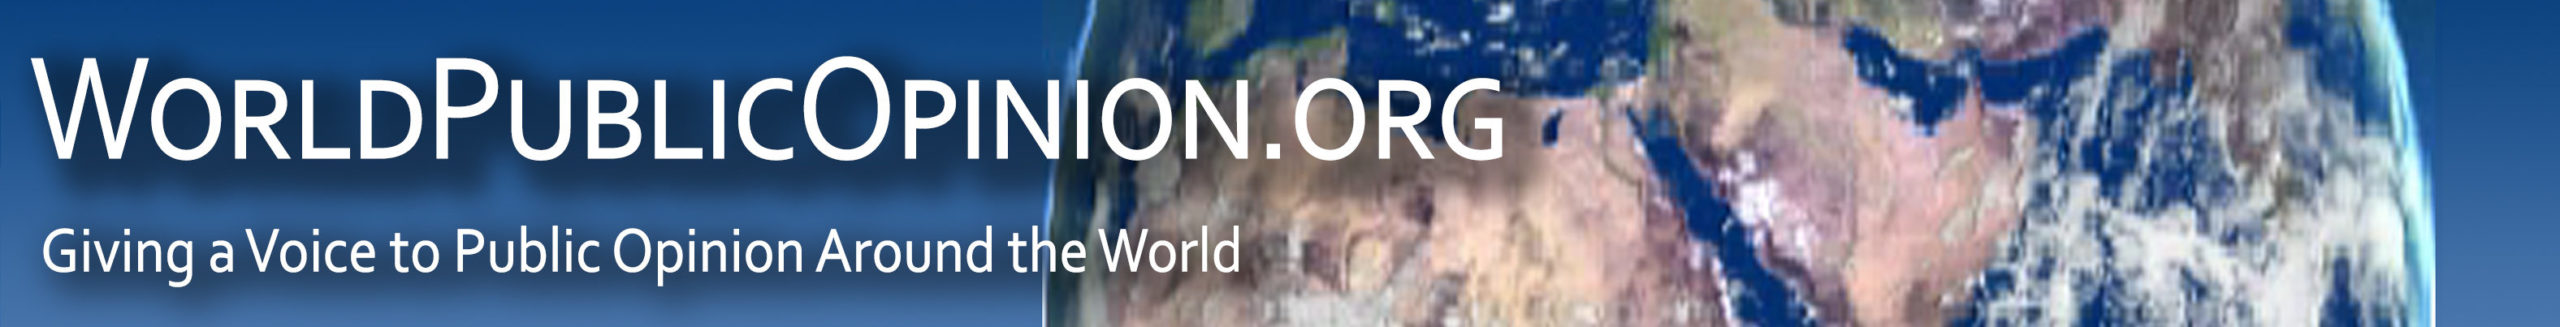 WorldPublicOpinion.org